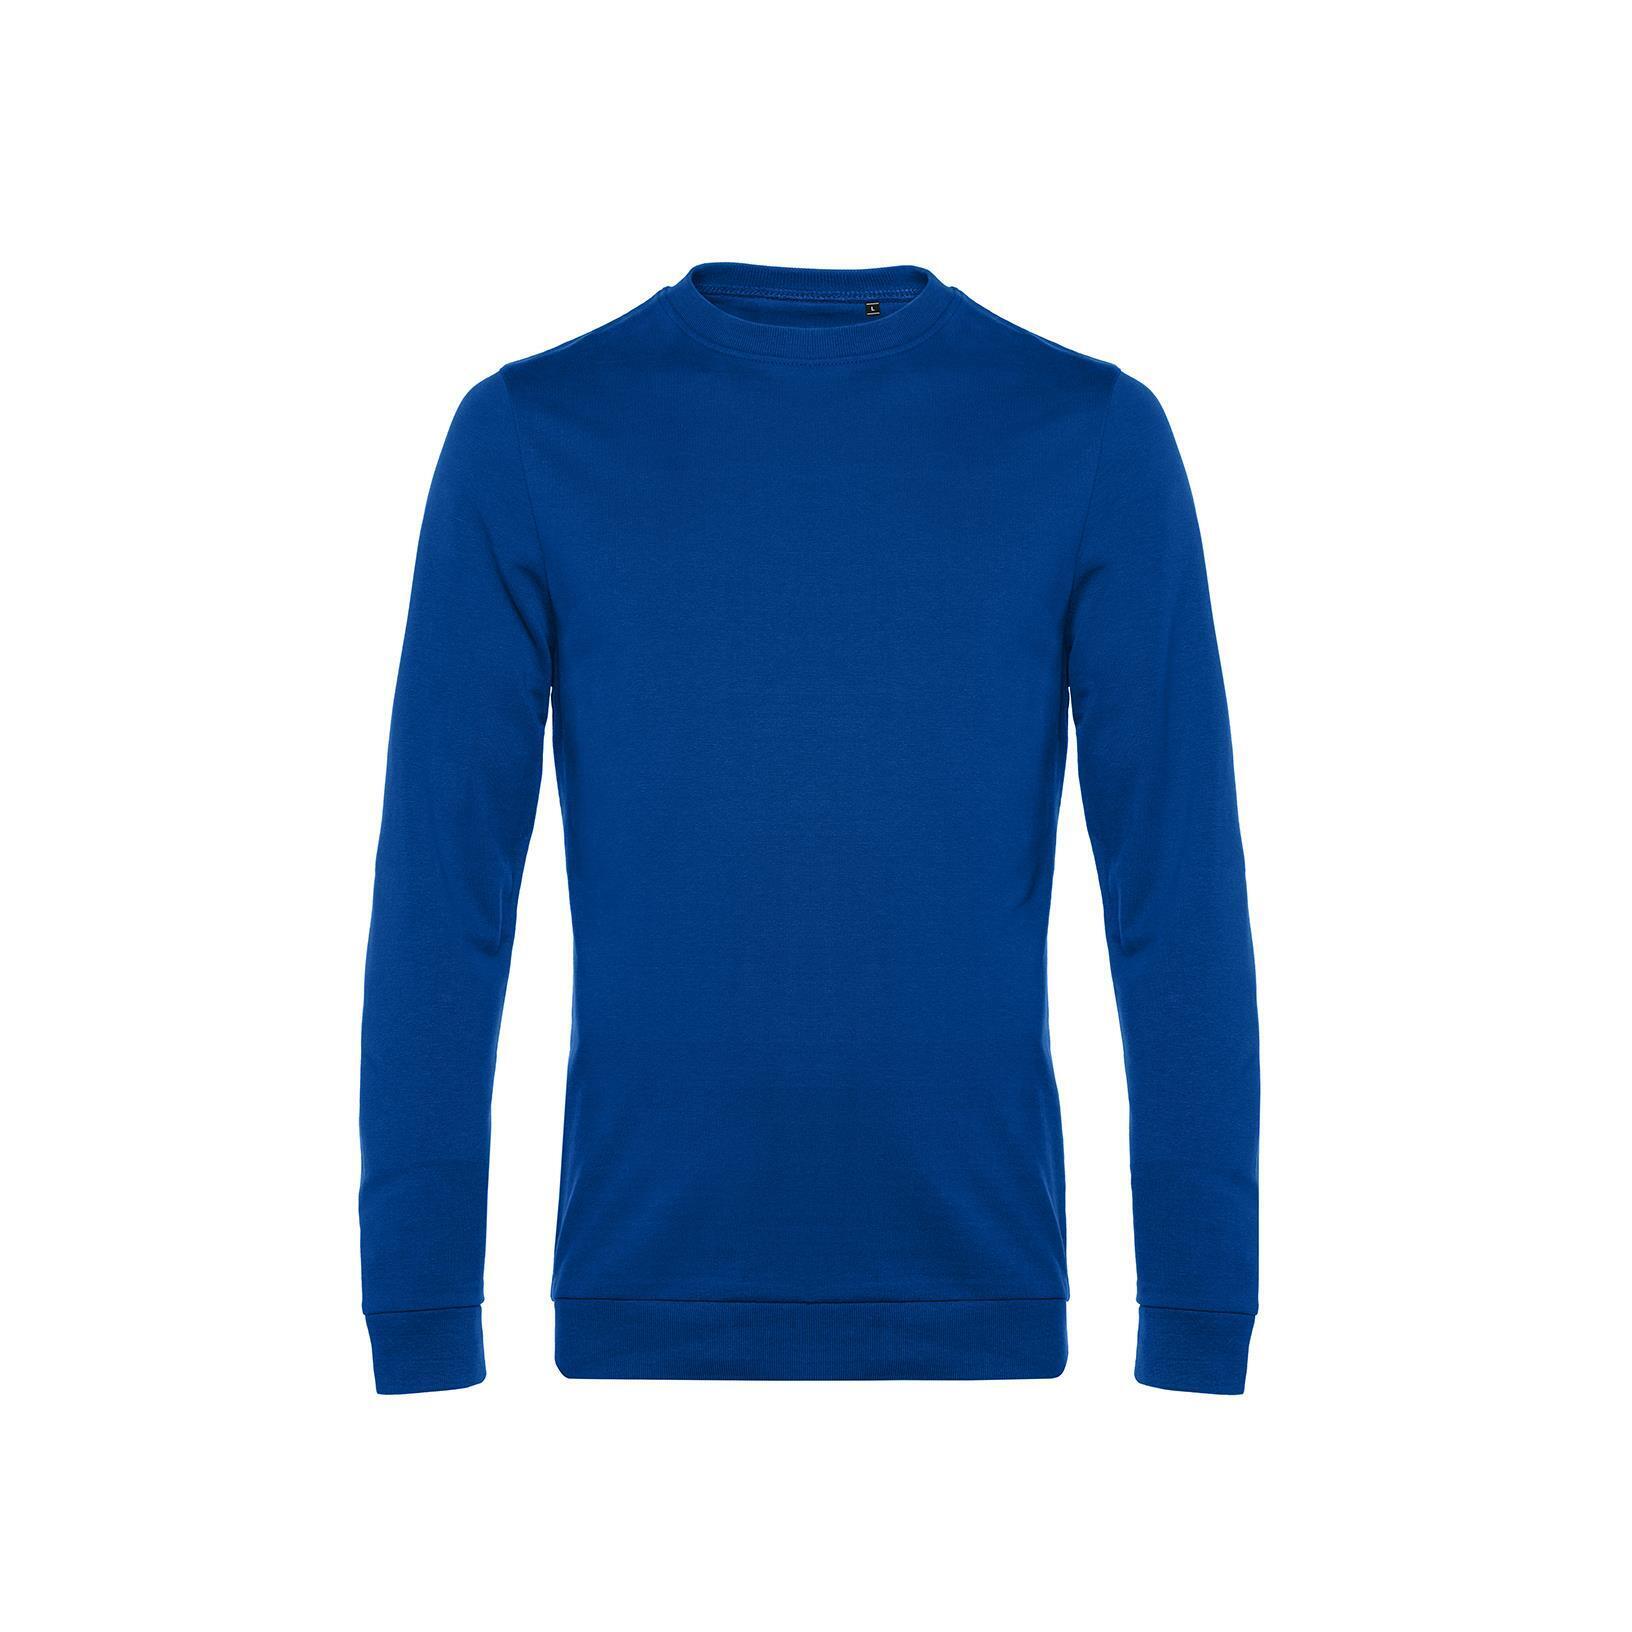 Royal blauwe Trendy Sweater sweatshirt trui unisex heren 